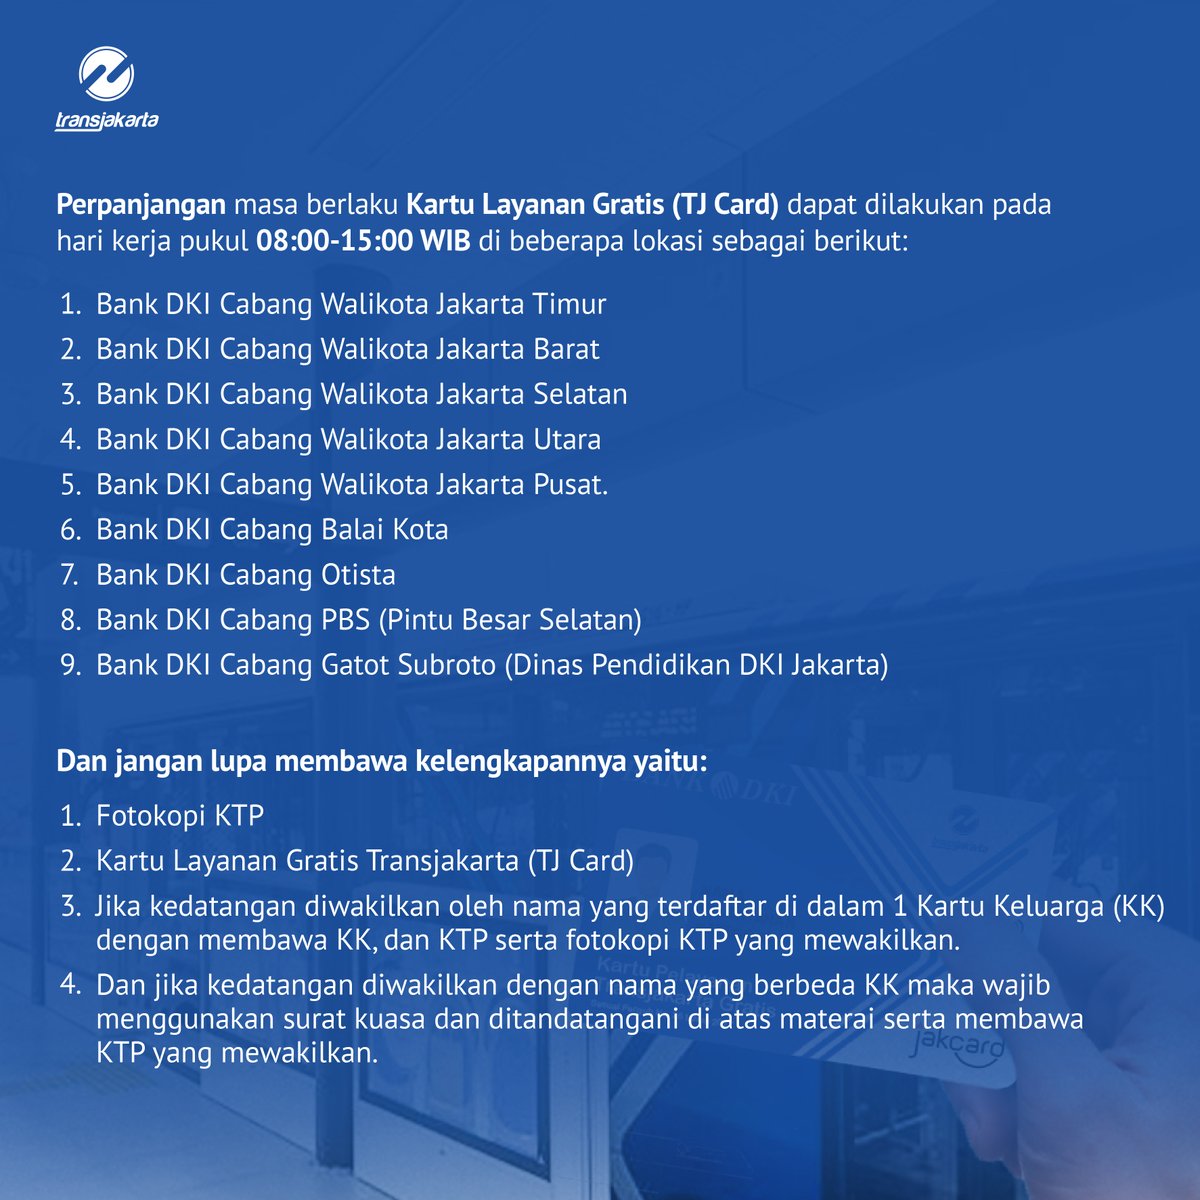 Sahabat TiJe, yuk lihat gambar di bawah ini ya untuk mengetahui kategori apa saja yang termasuk penerima Kartu Layanan gratis Transjakarta (TJ Card) serta persyaratan pendaftarannya yang sangat mudah! Ayo naik Transjakarta!